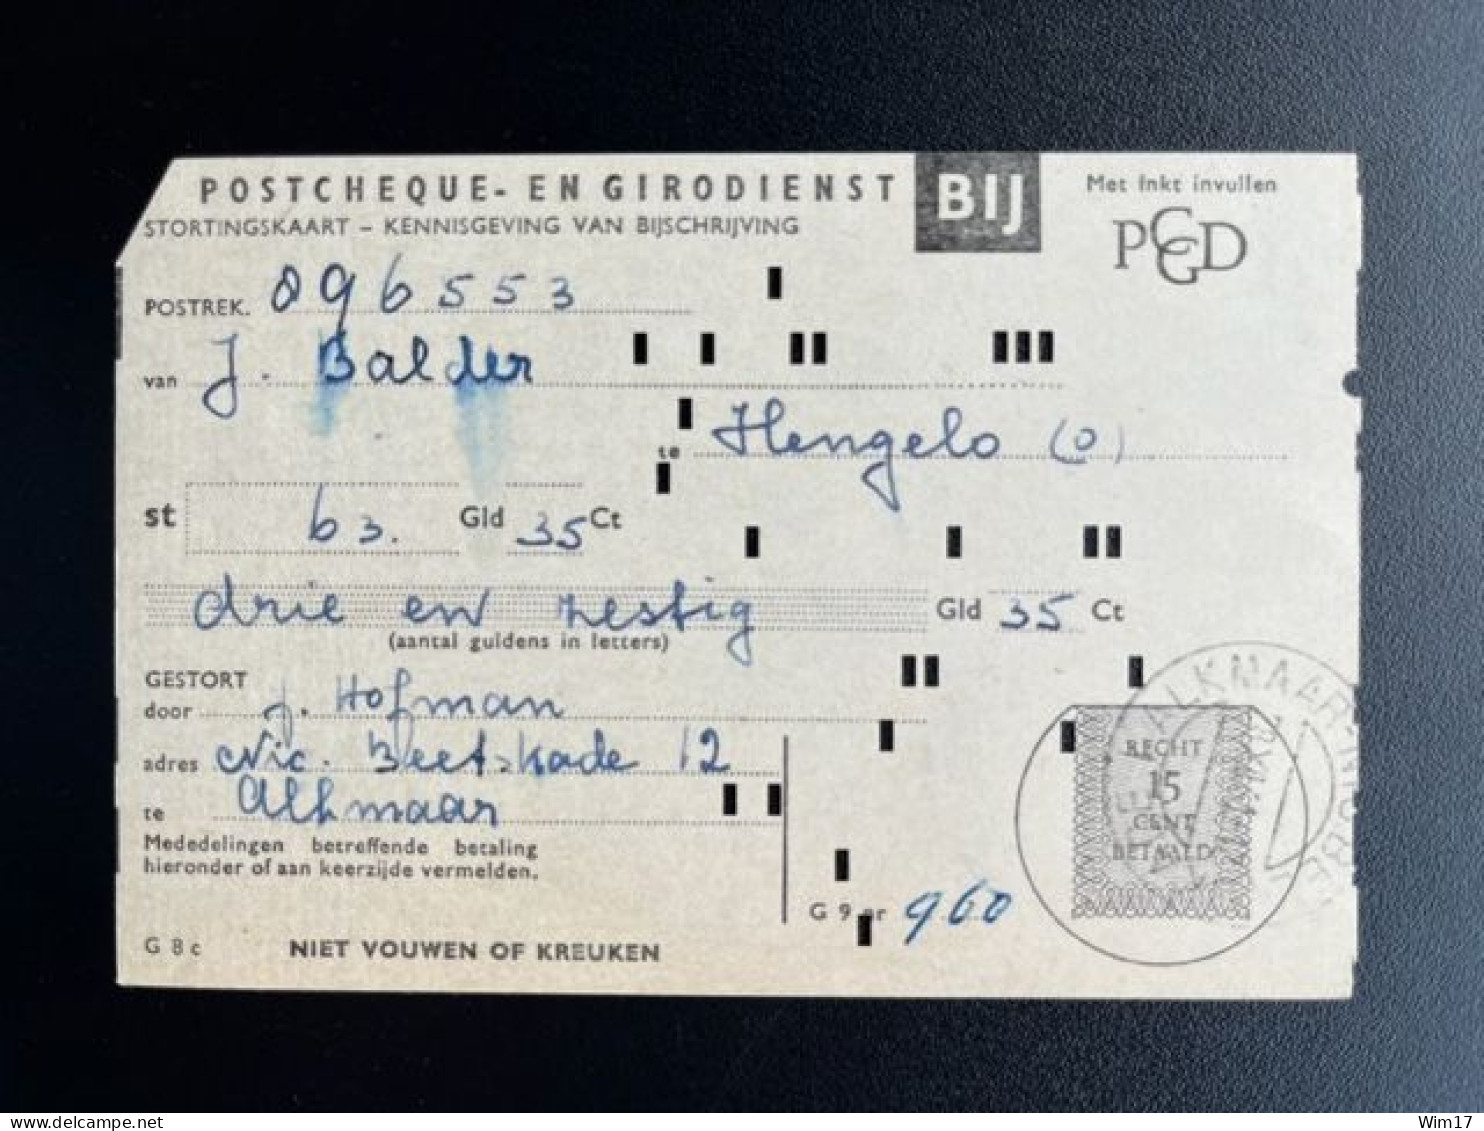 NETHERLANDS 1961 ALKMAAR 28-12-1961 PAYMENT RECEIPT POSTGIRO NEDERLAND ACCEPTGIRO STORTINGSRECHT - Storia Postale